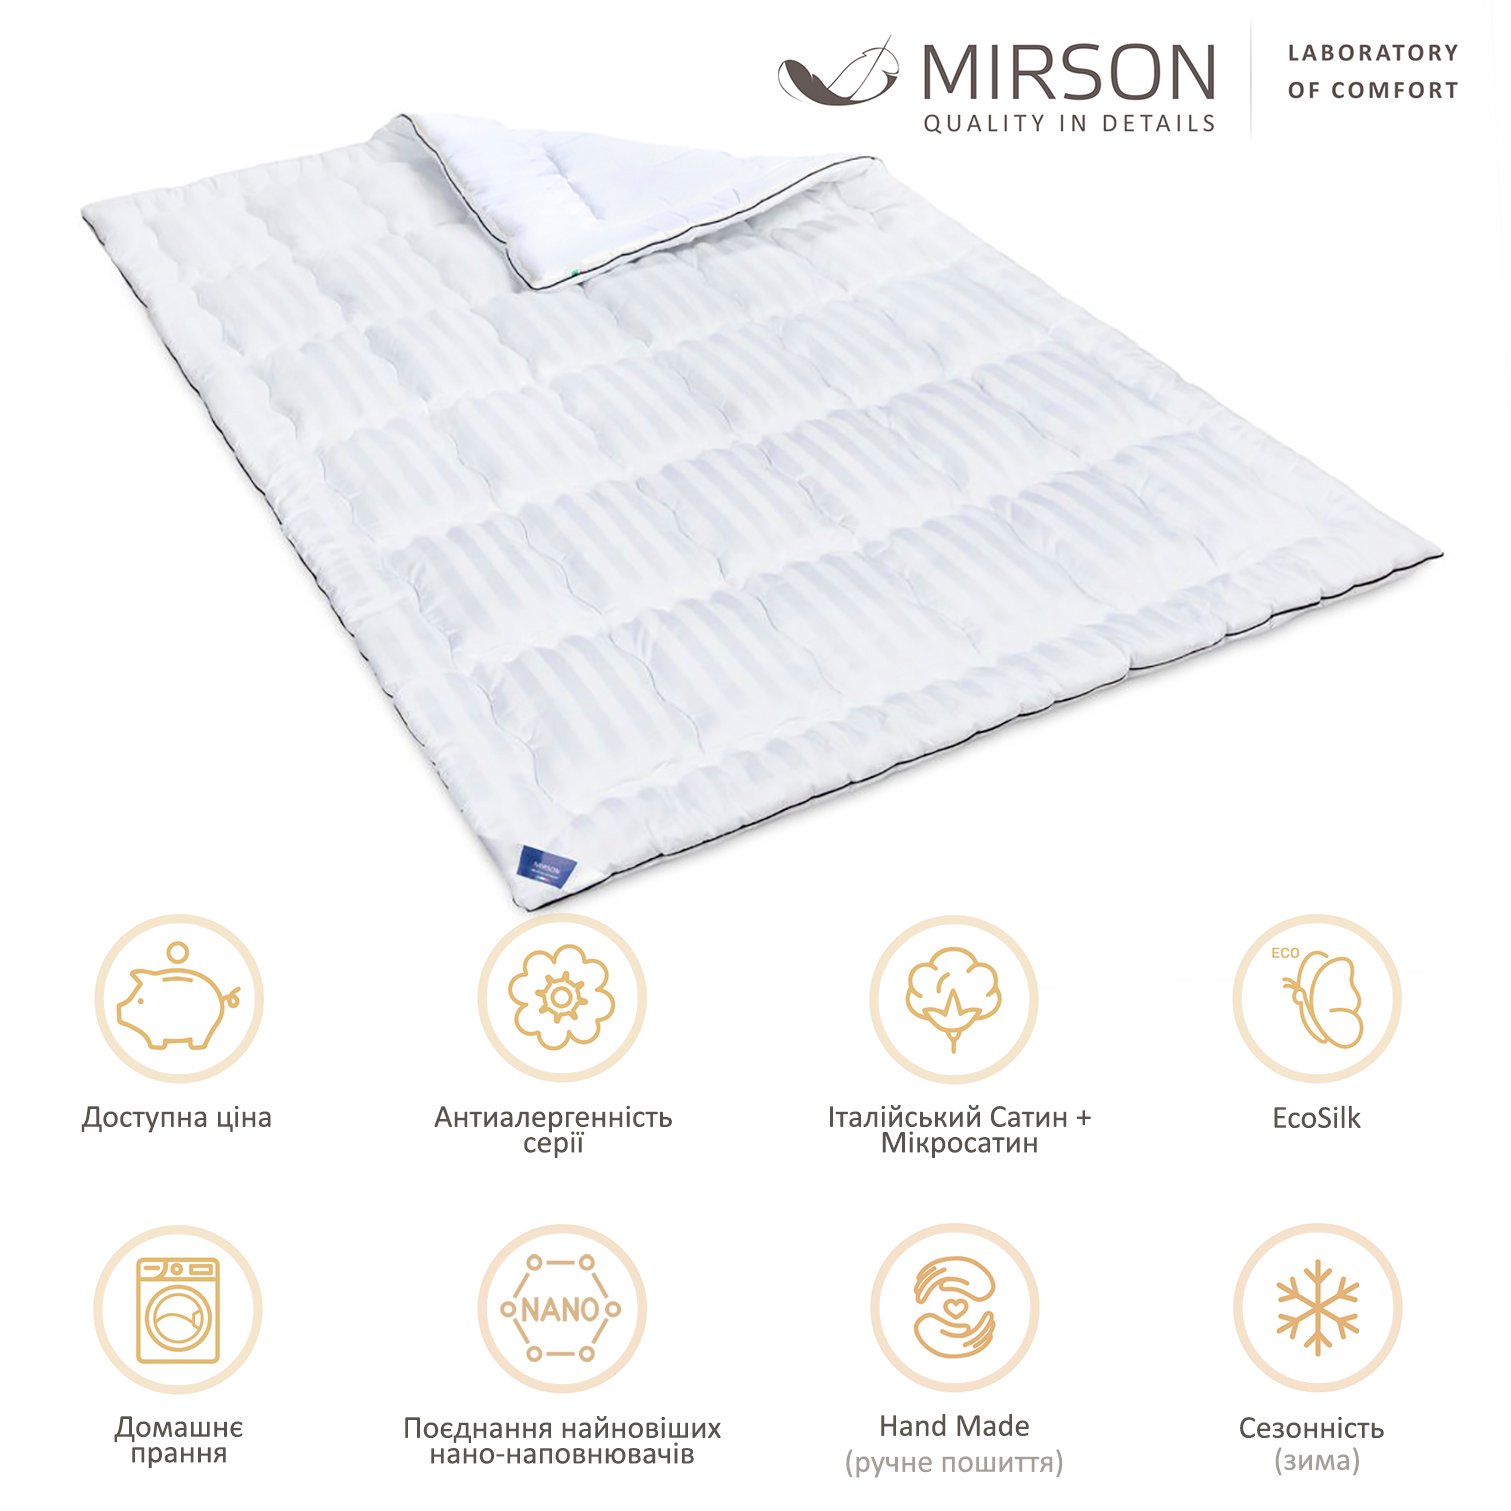 Одеяло антиаллергенное MirSon Royal Pearl Hand Made EcoSilk №0556, зимнее, 172x205 см, белое - фото 5